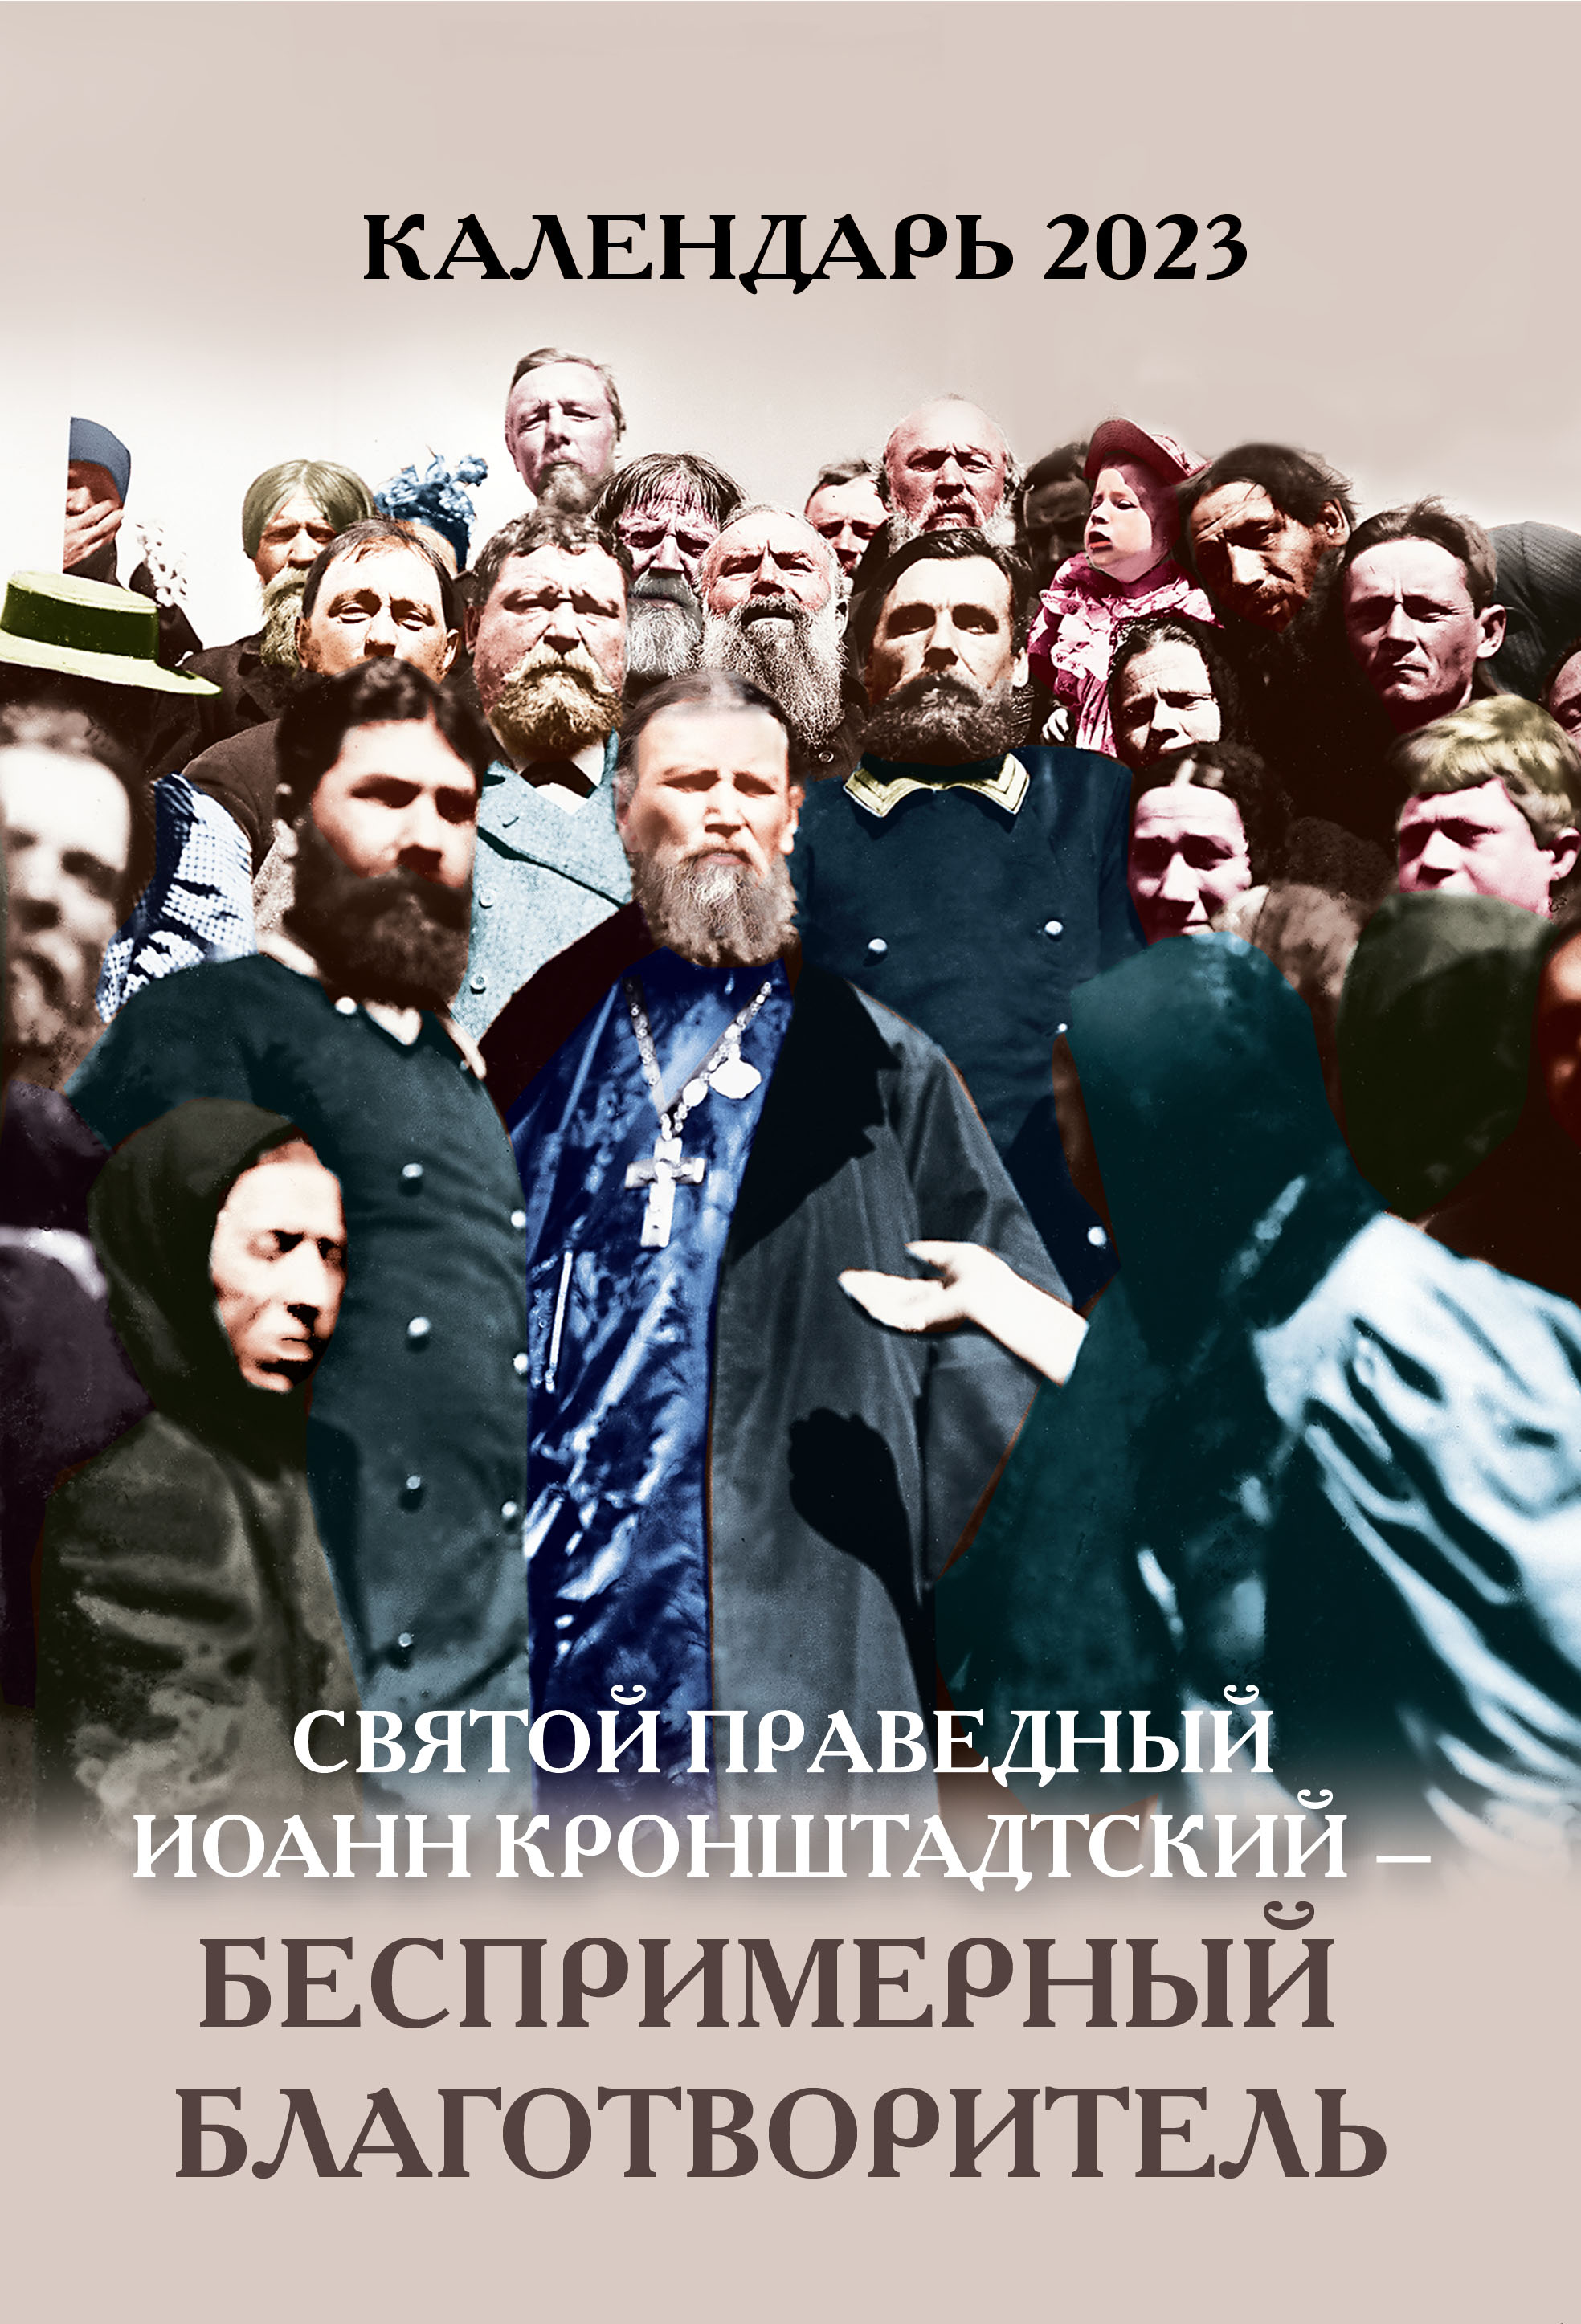 Православный календарь на 2023 год " Святой праведный Иоанн Кронштадтский- беспримерный благотворитель" -